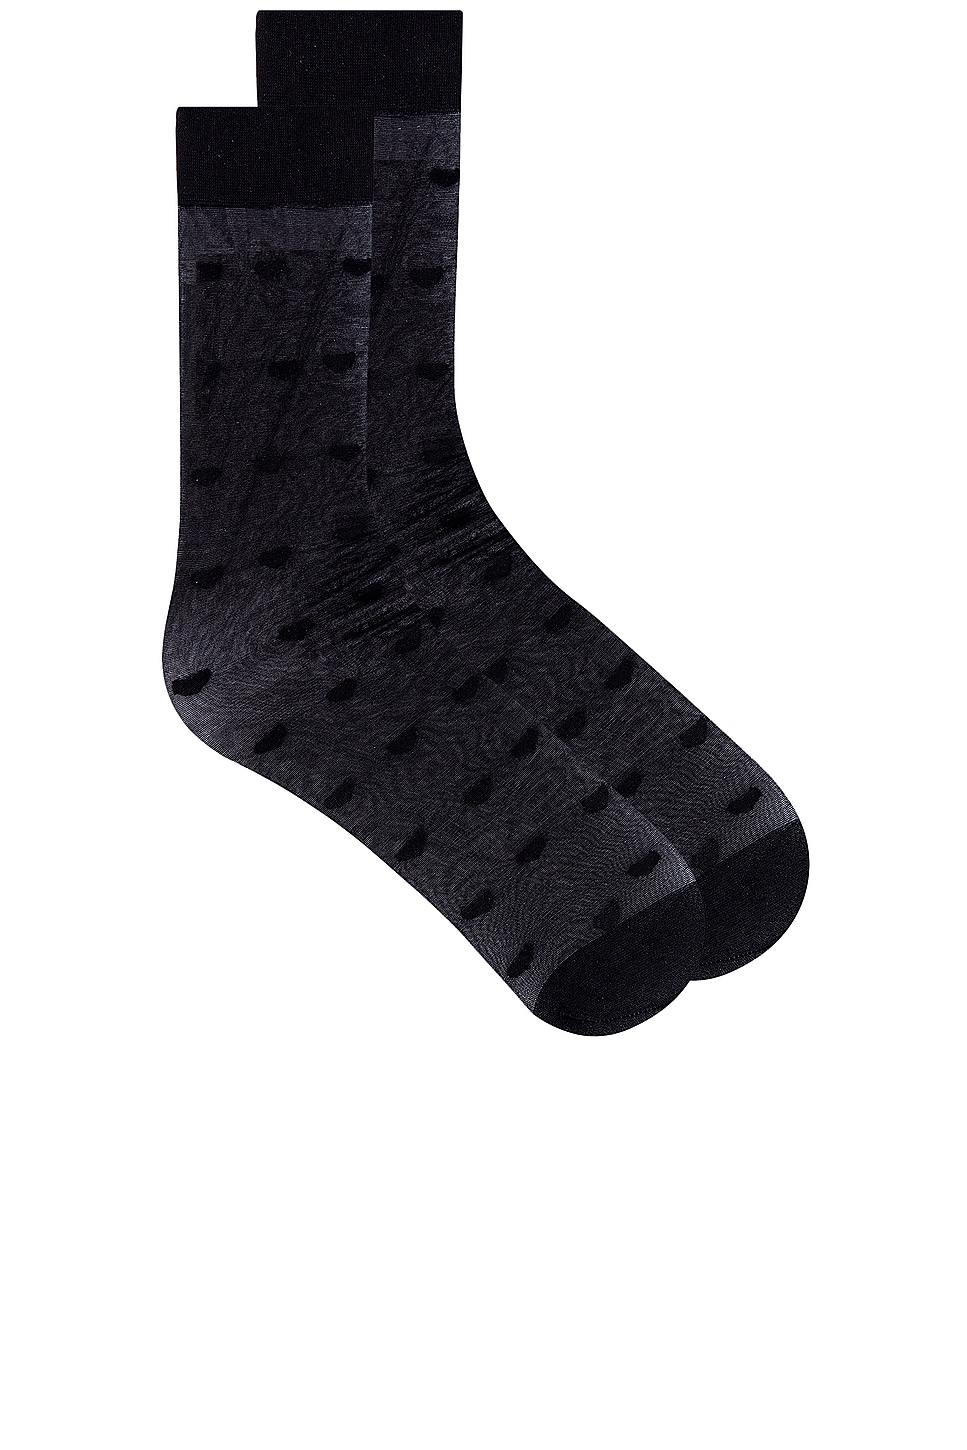 Dot Sock in Black